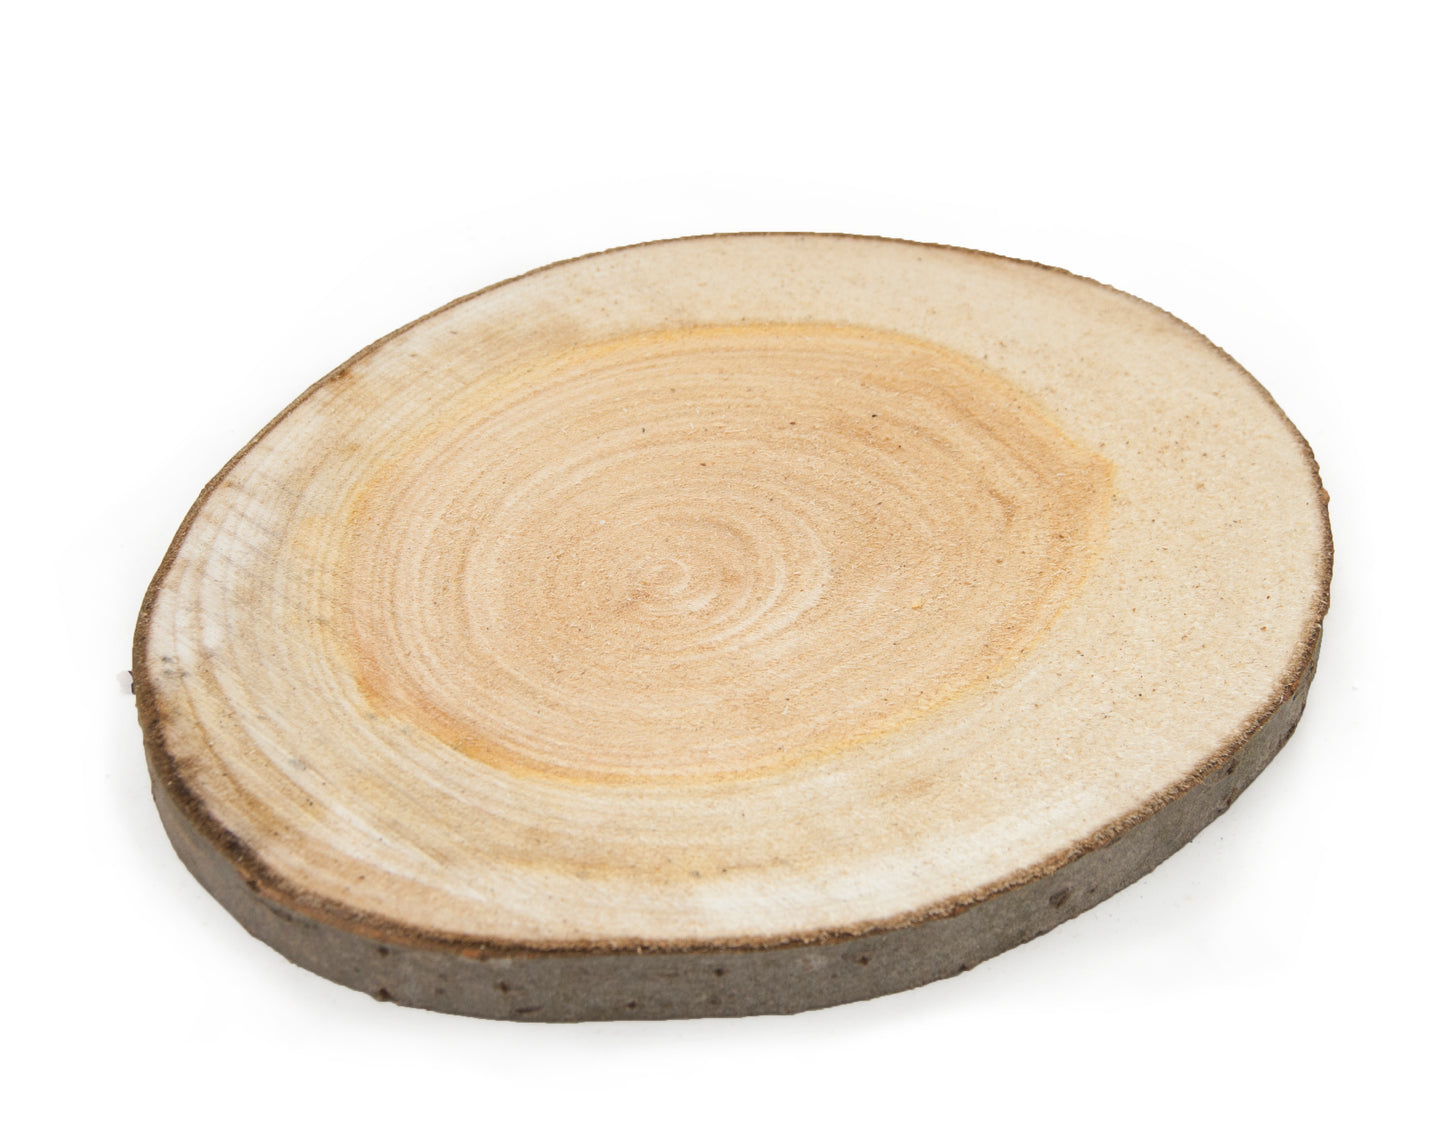 Poplar Wood Slice - Sanded on one side